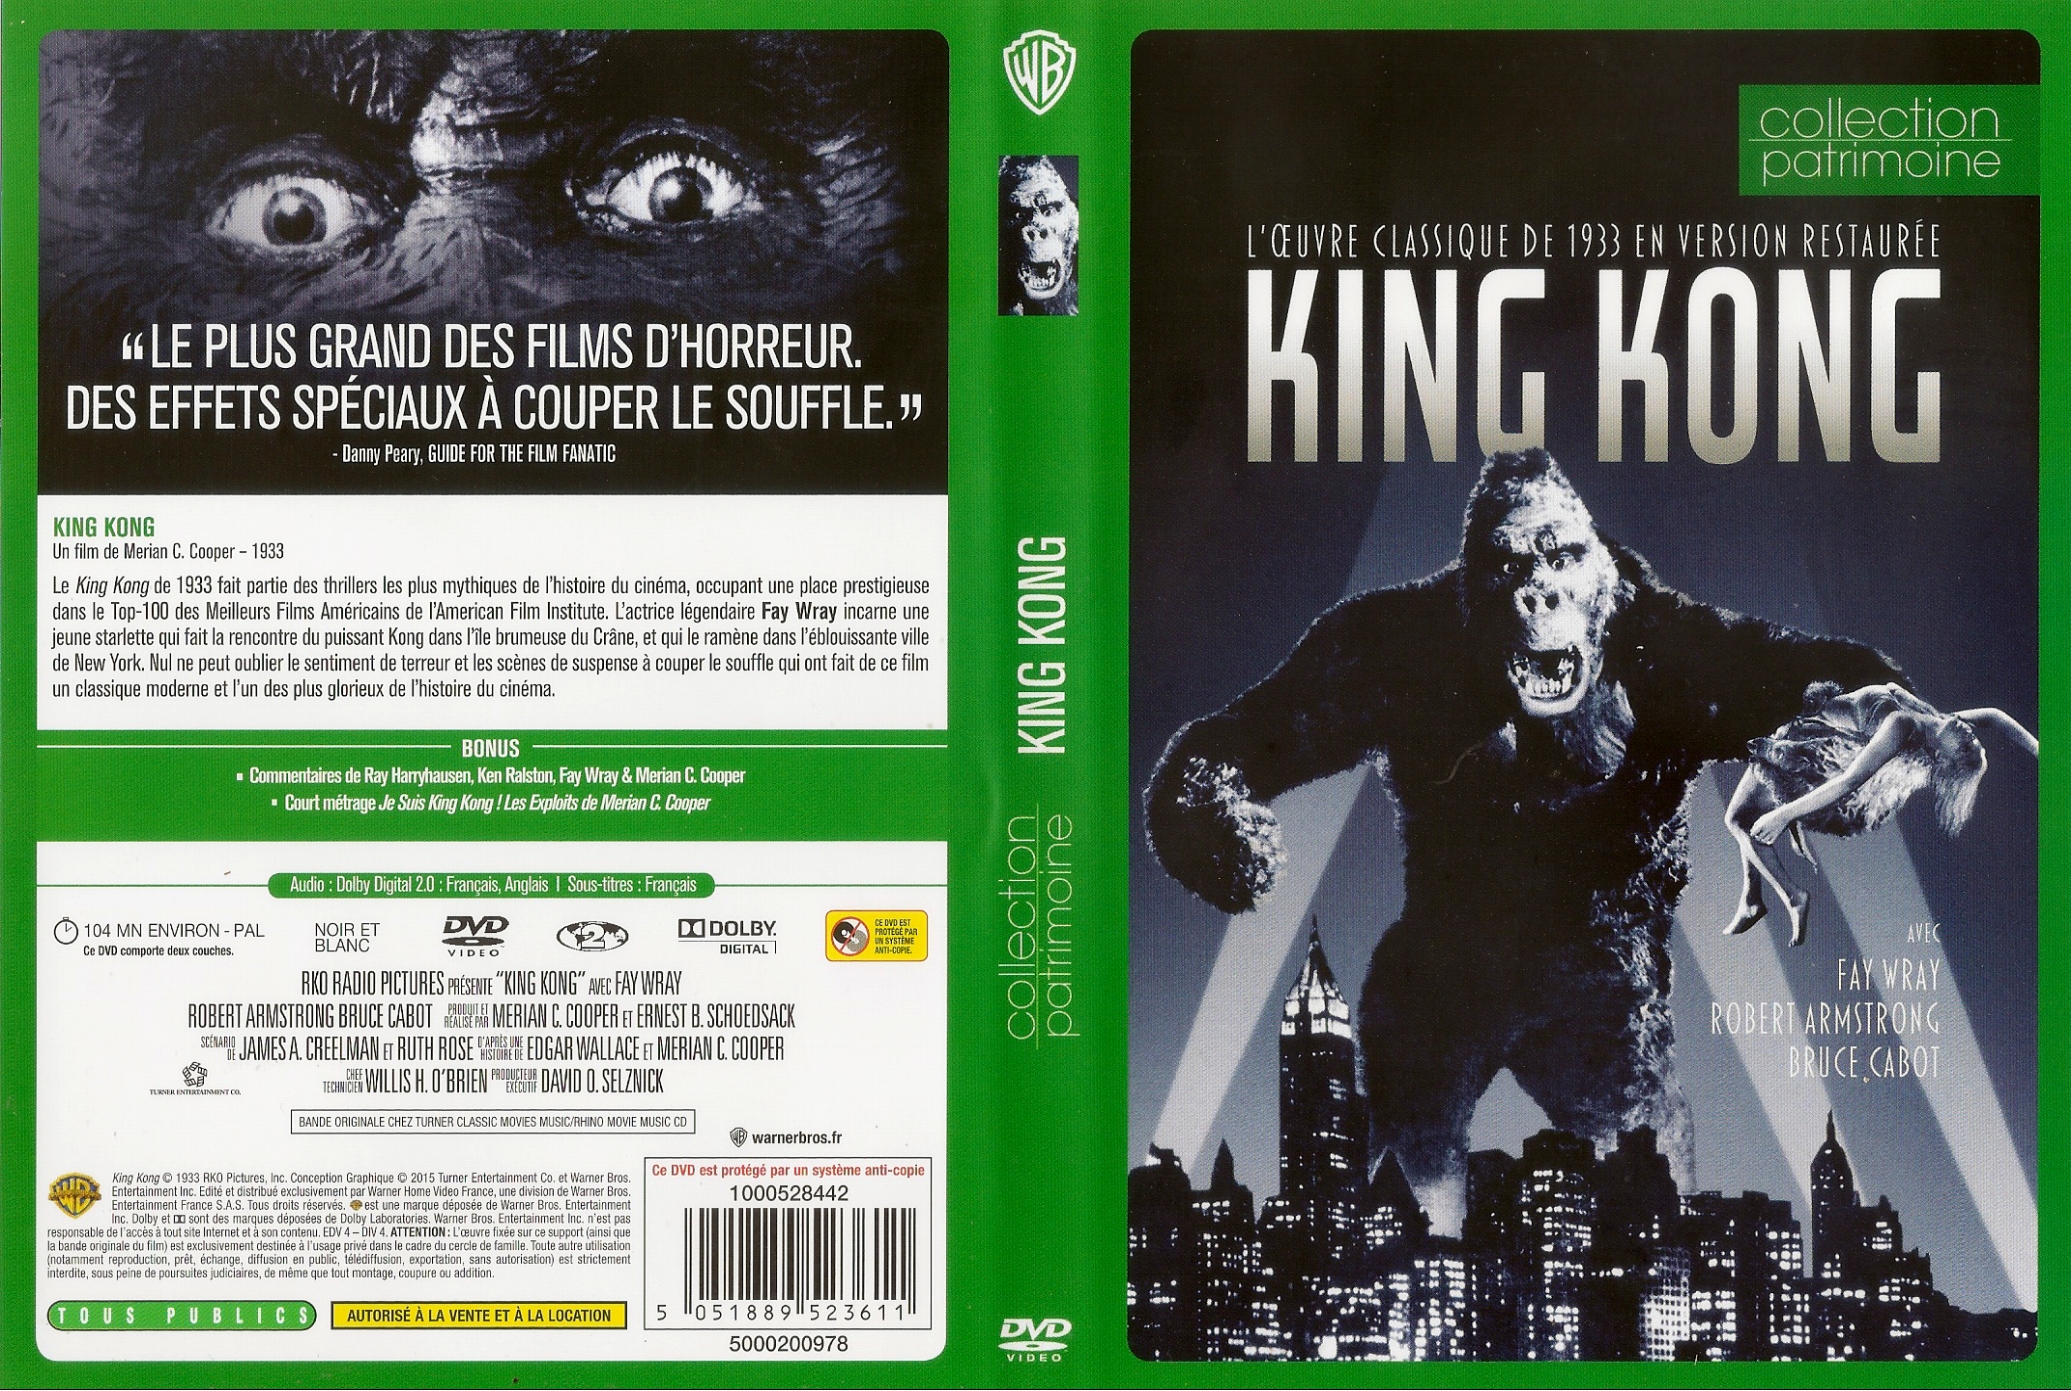 Jaquette DVD King kong (1933) v4